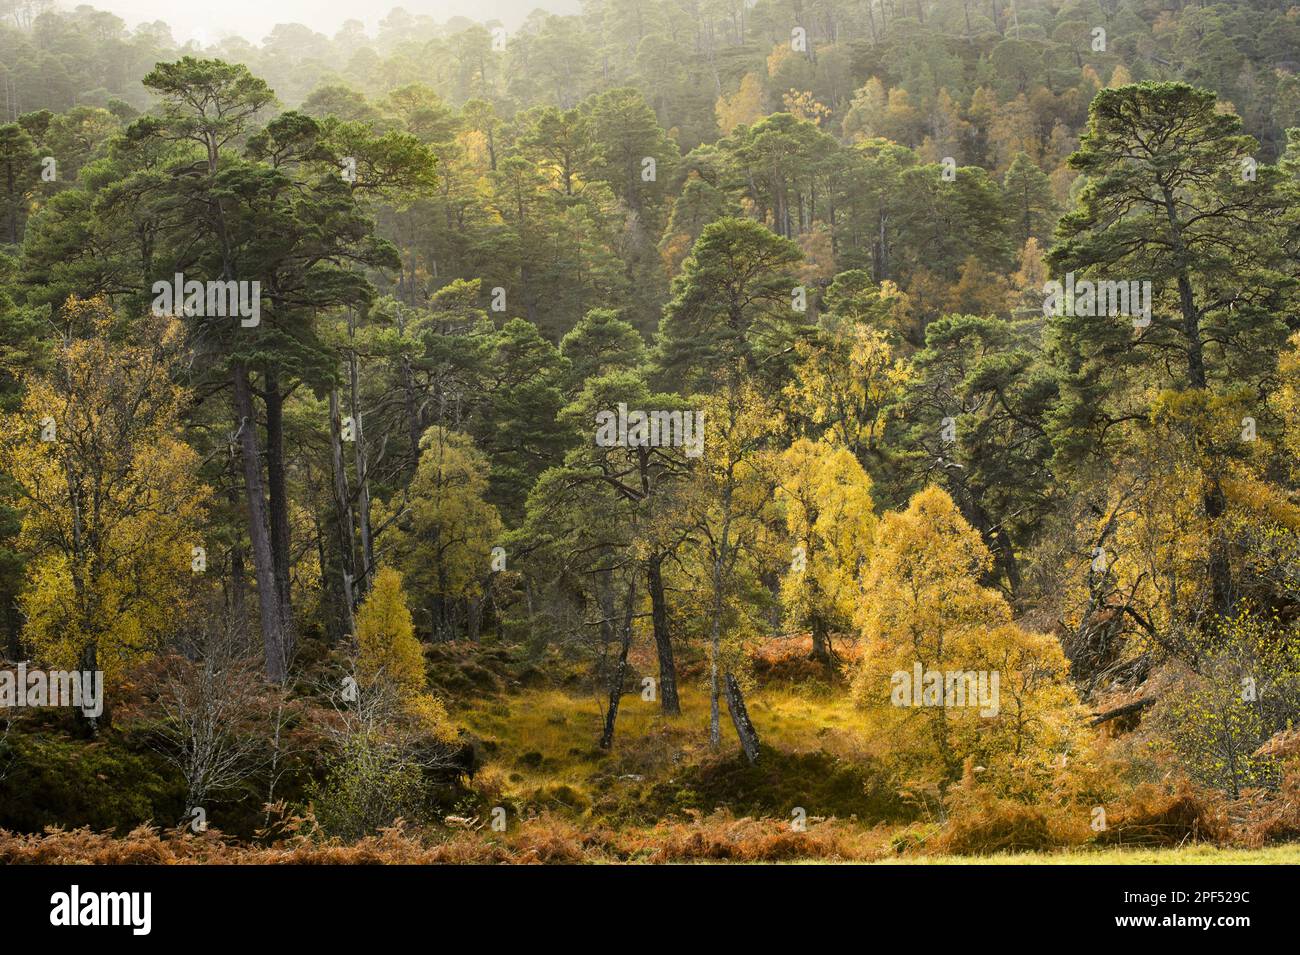 Habitat forestier pin écossais (Pinus sylvestris) et bouleau verrueux (Betula pendula), Glen Strathfarrar, Inverness-shire, Highlands, Écosse, Royaume-Uni Banque D'Images